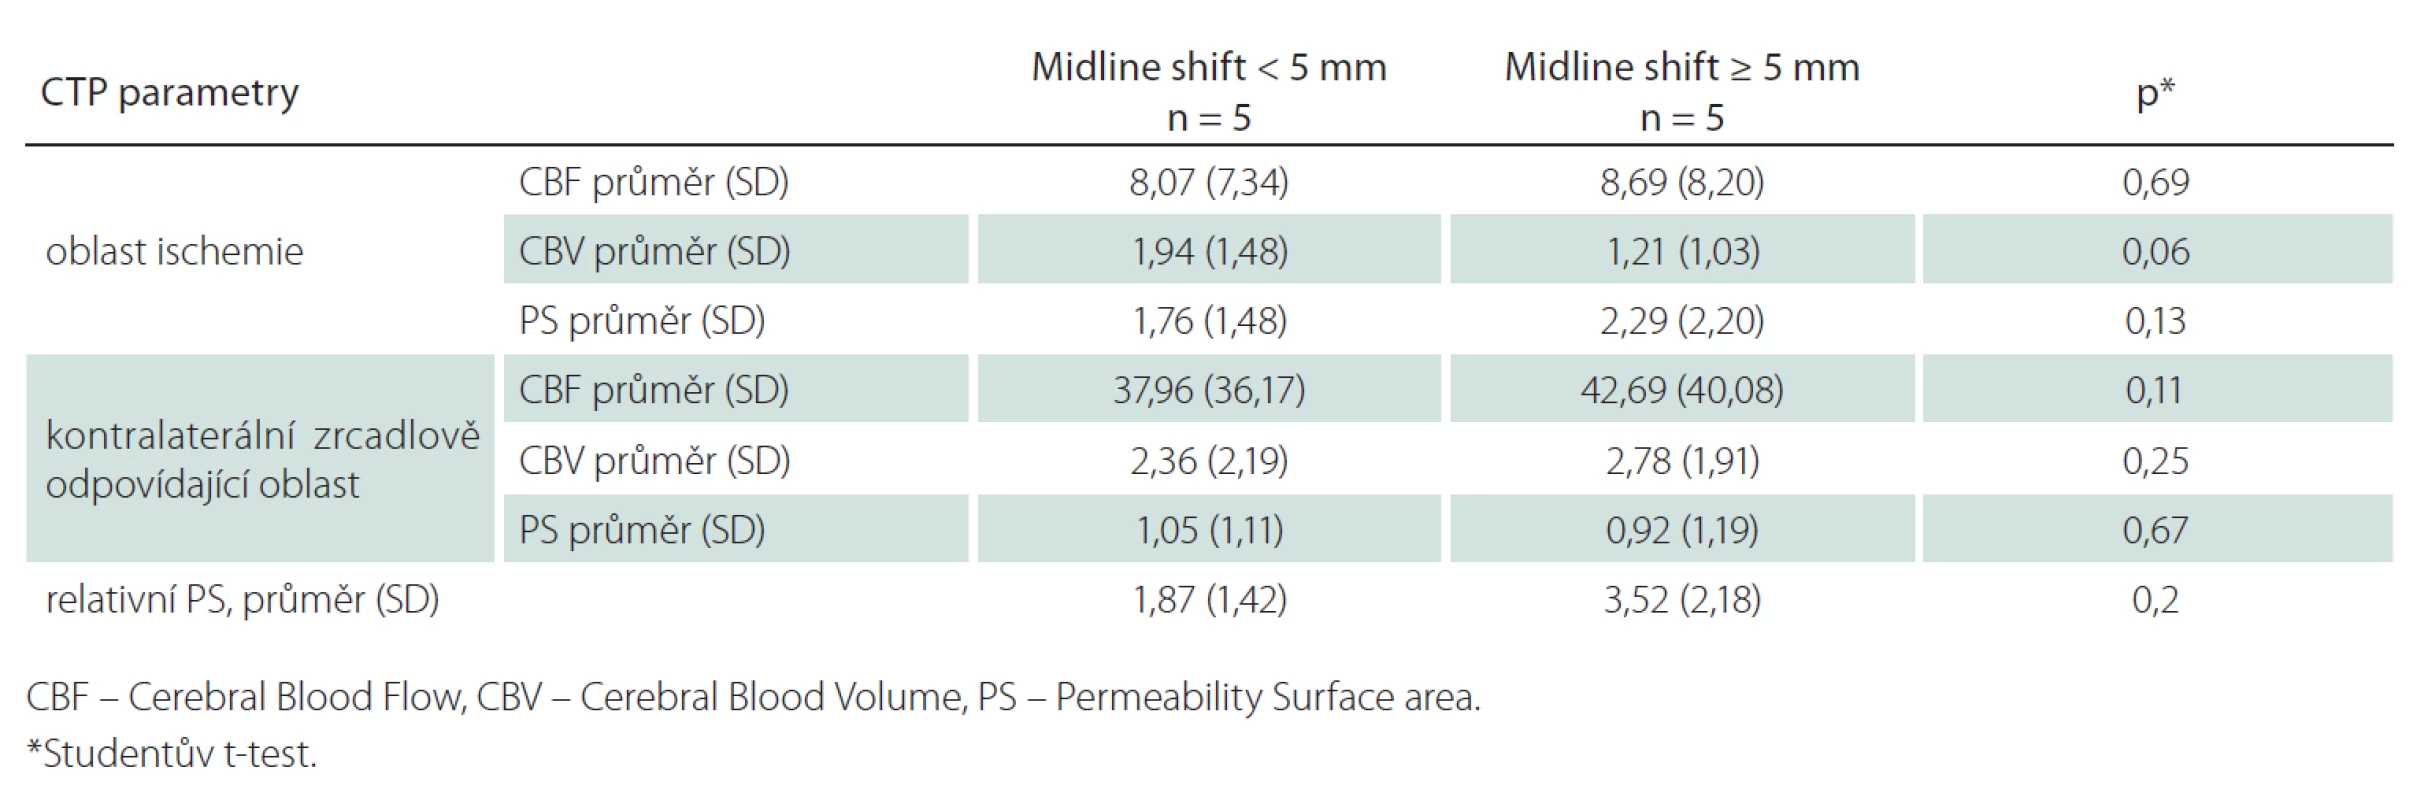 Srovnání CT perfuzních parametrů ve skupině s posunem středočárových struktur (midline shift) &lt; 5 mm a ≥ 5 mm pro kompletní teritorium ischemie.